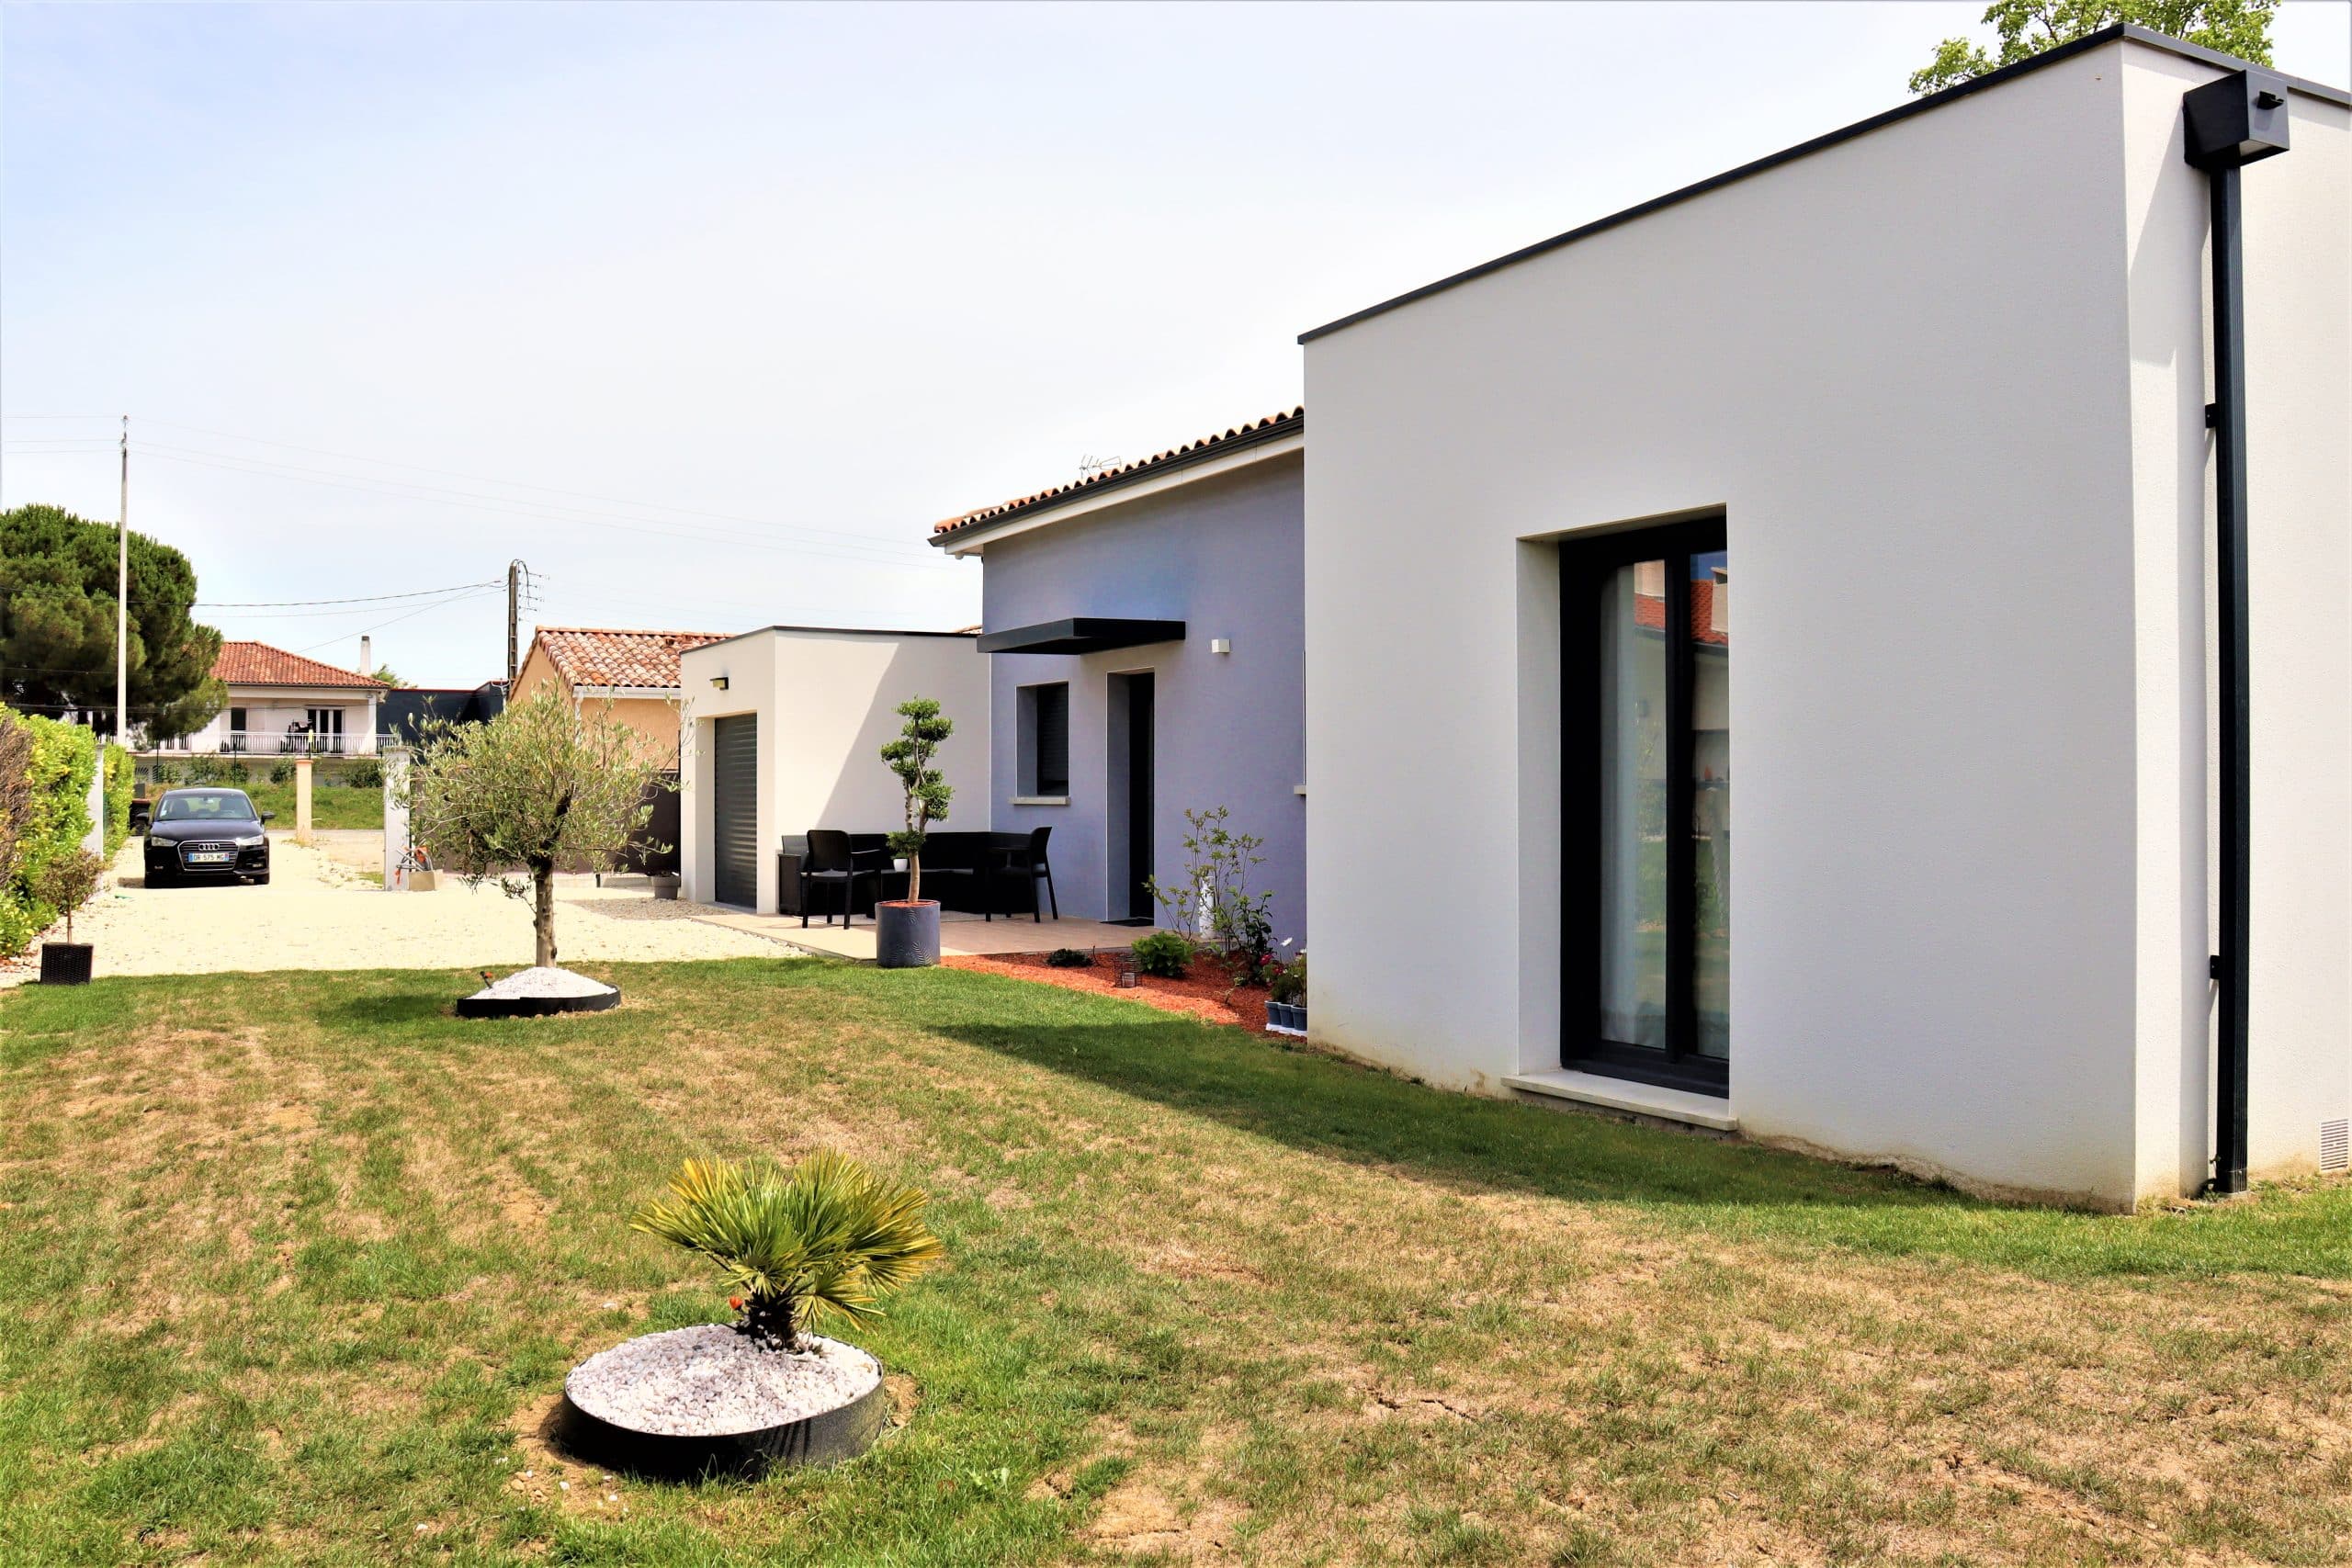 Maison moderne de plain-pied construite à Castelnau d'Estretefonds en Haute-Garonne